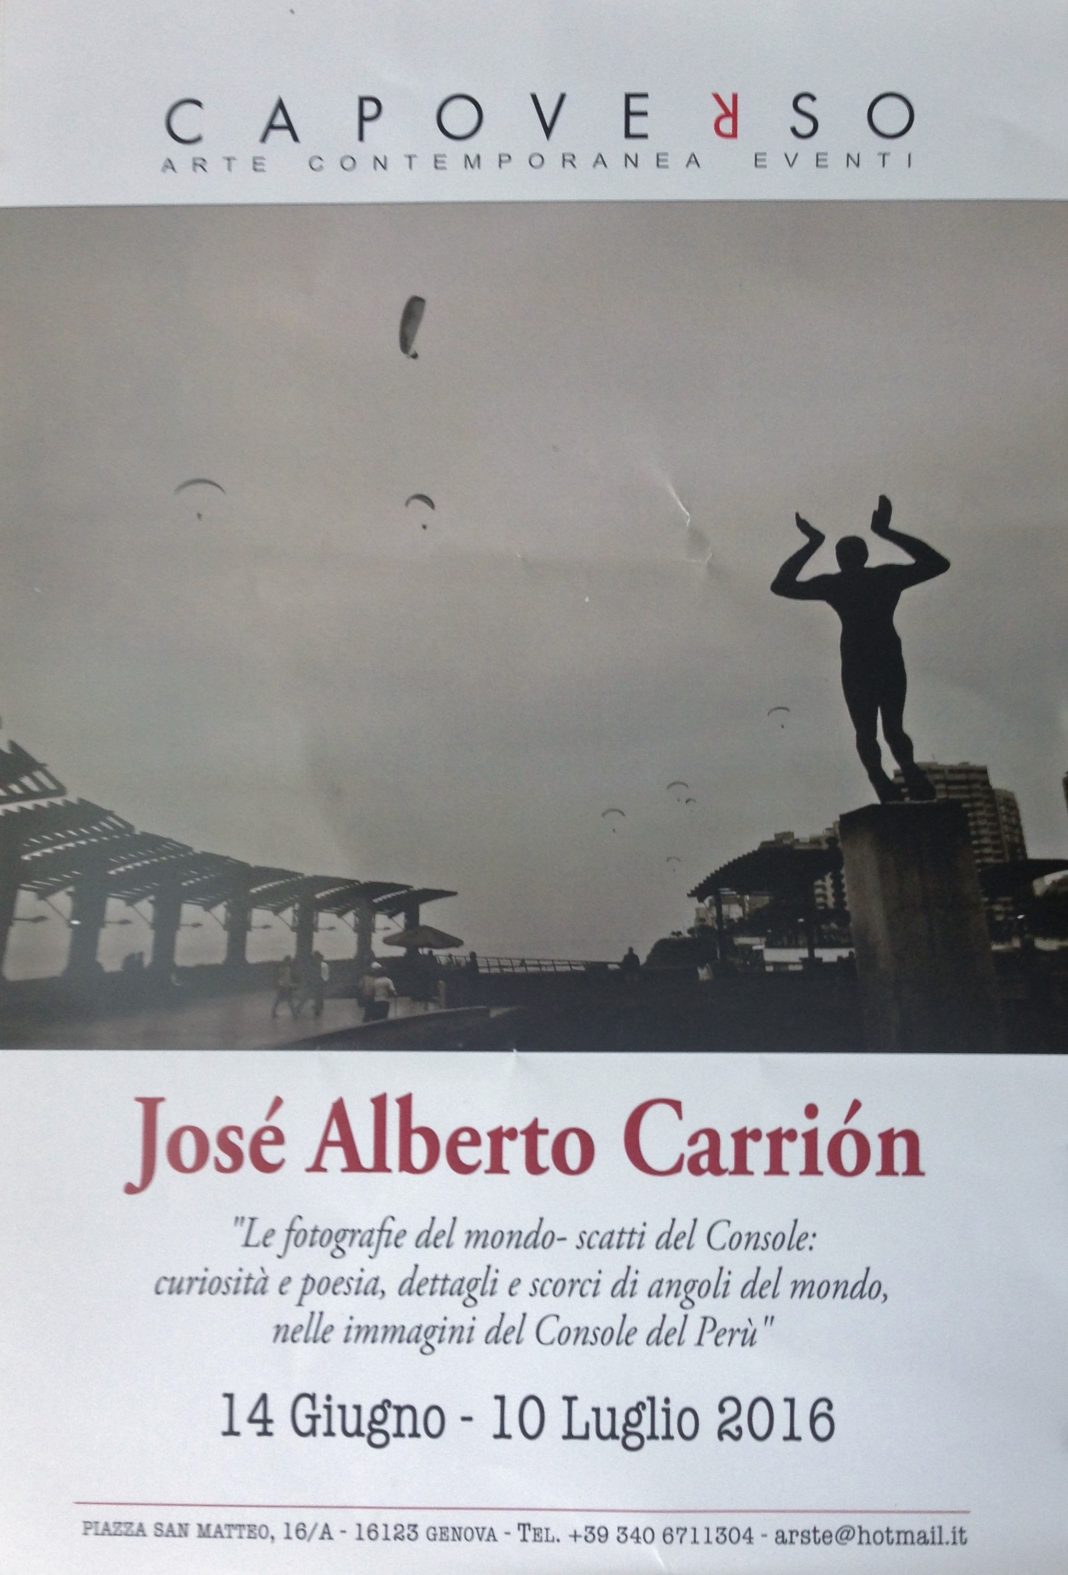 José Alberto Carriòn – Fotografie del mondo. Scatti del Consolehttps://www.exibart.com/repository/media/eventi/2016/06/josé-alberto-carriòn-8211-fotografie-del-mondo.-scatti-del-console-1068x1575.jpg